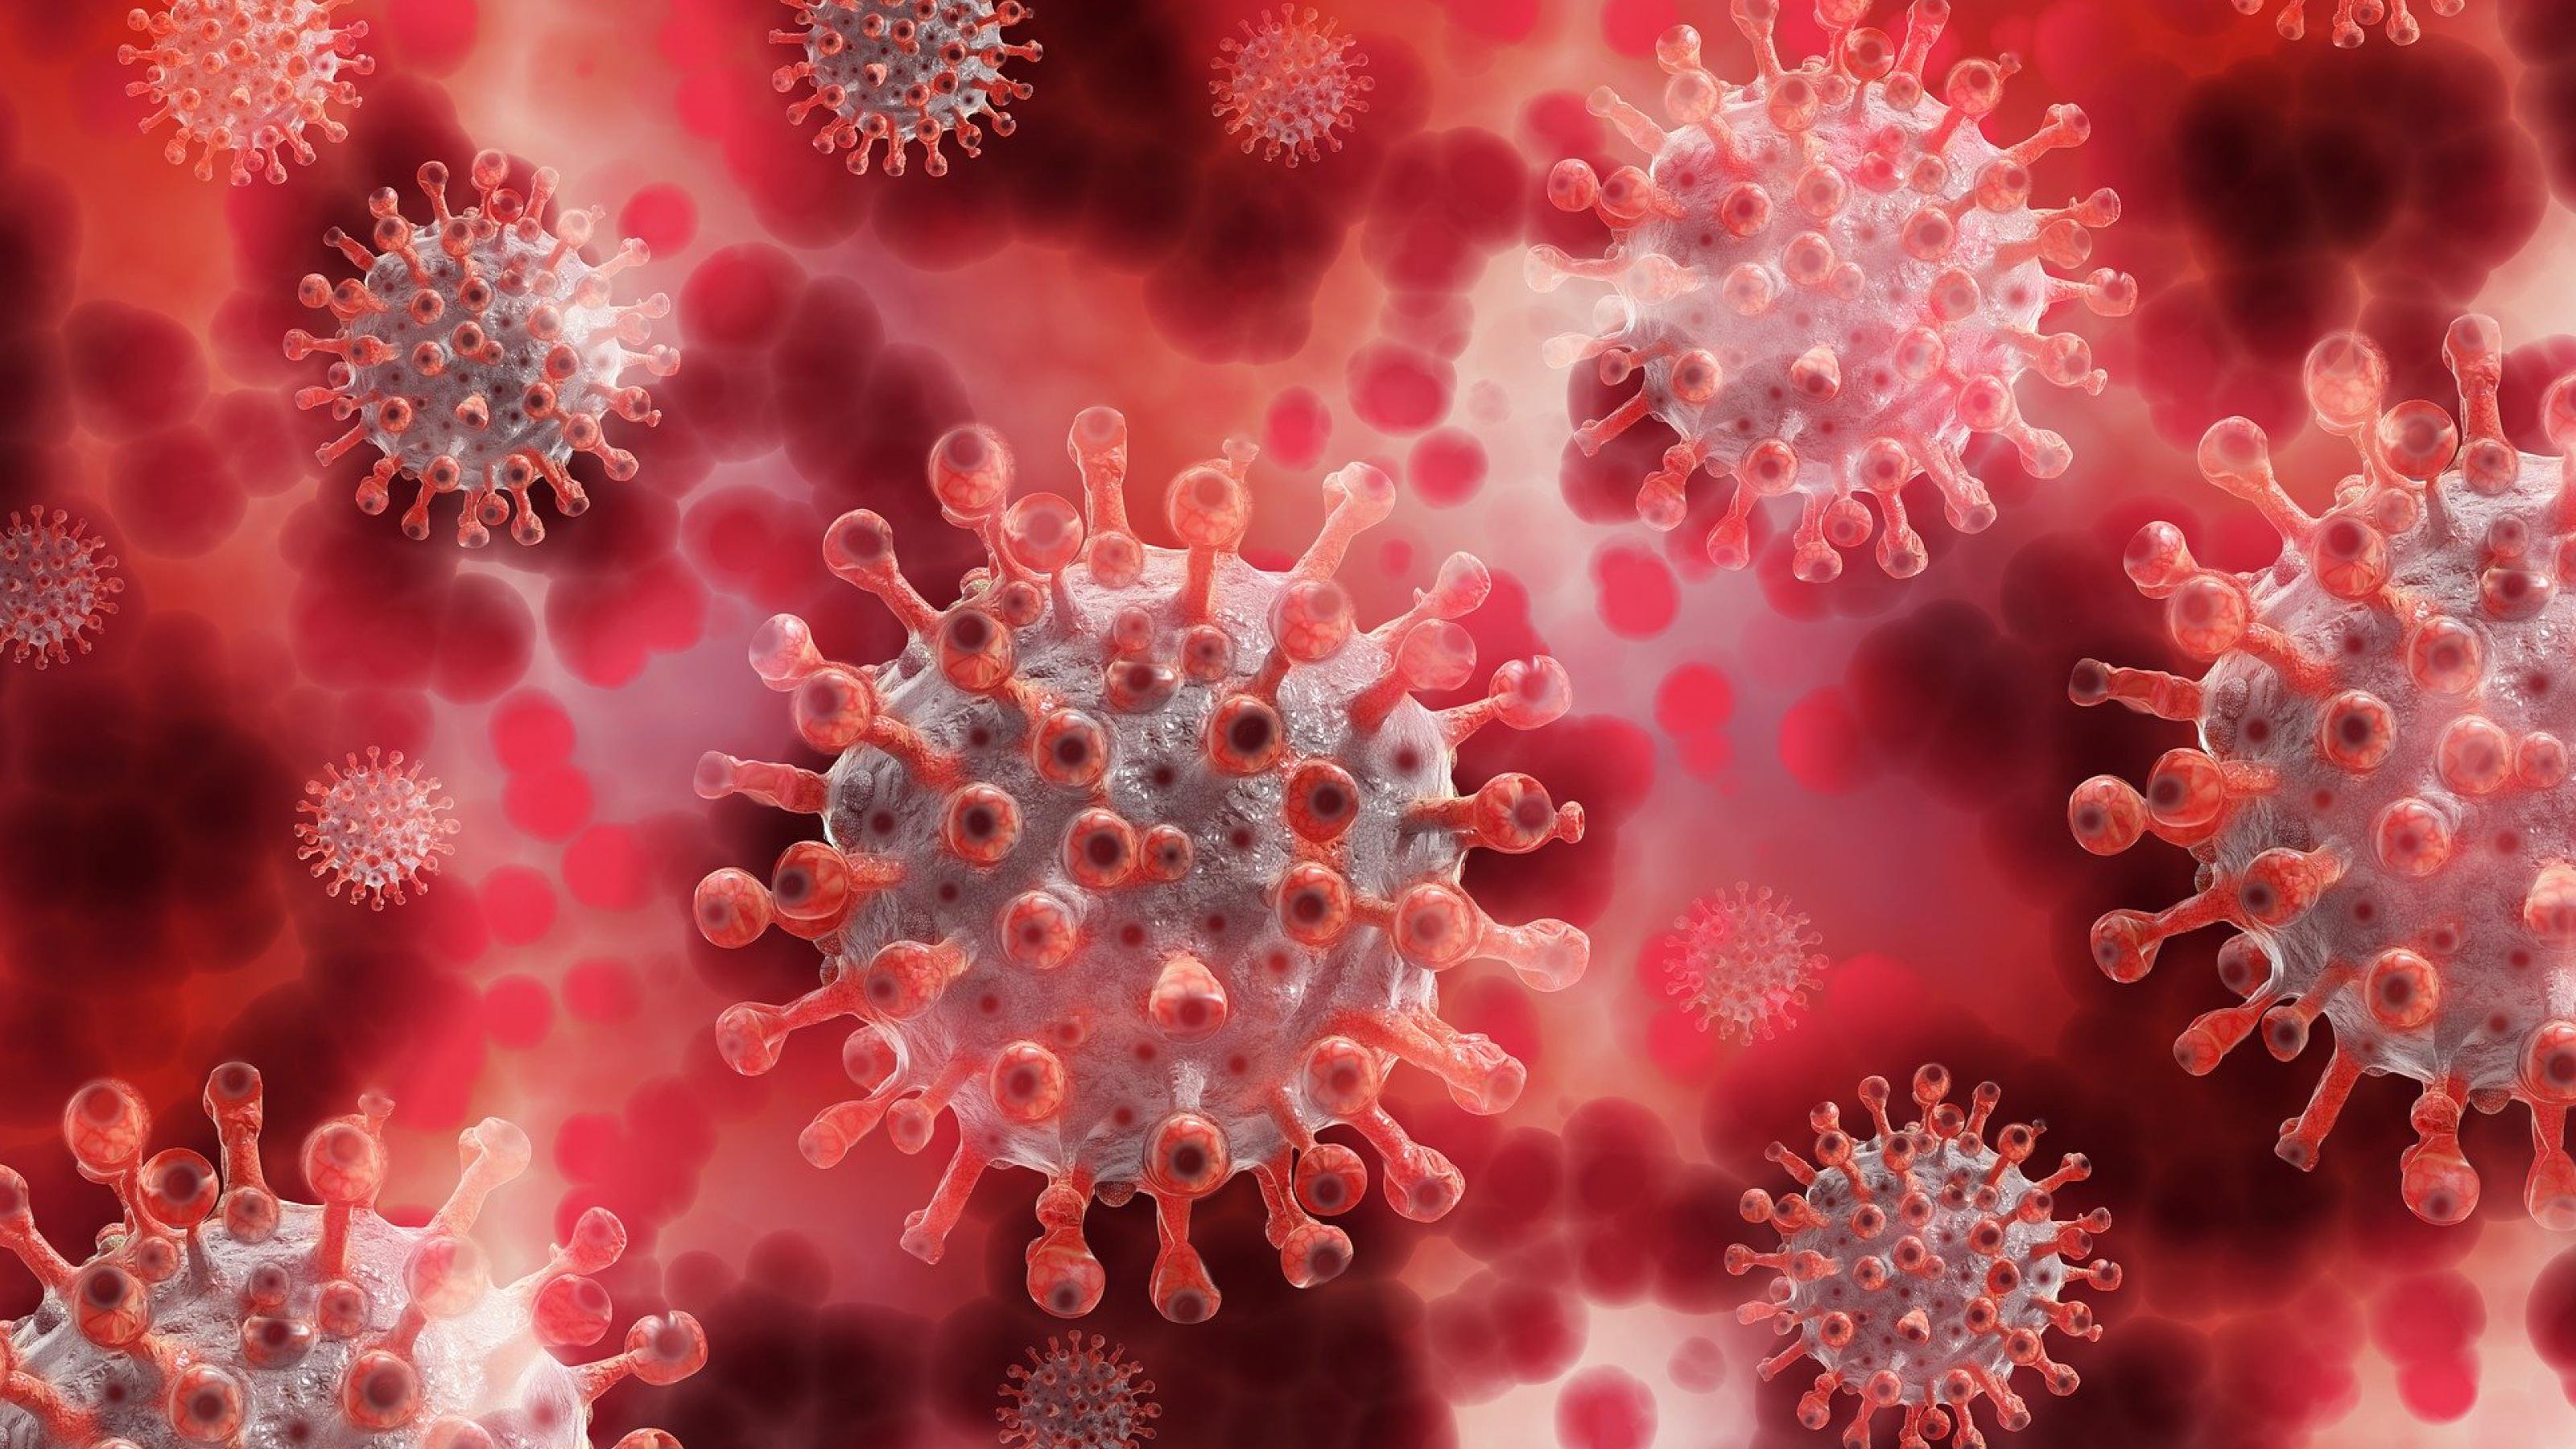 Dargestellt ist eine künstlerische Darstellung von kugelförmigen Viren mit dornenartigen Fortsätzen auf der Oberfläche in der Art von Coronaviren.